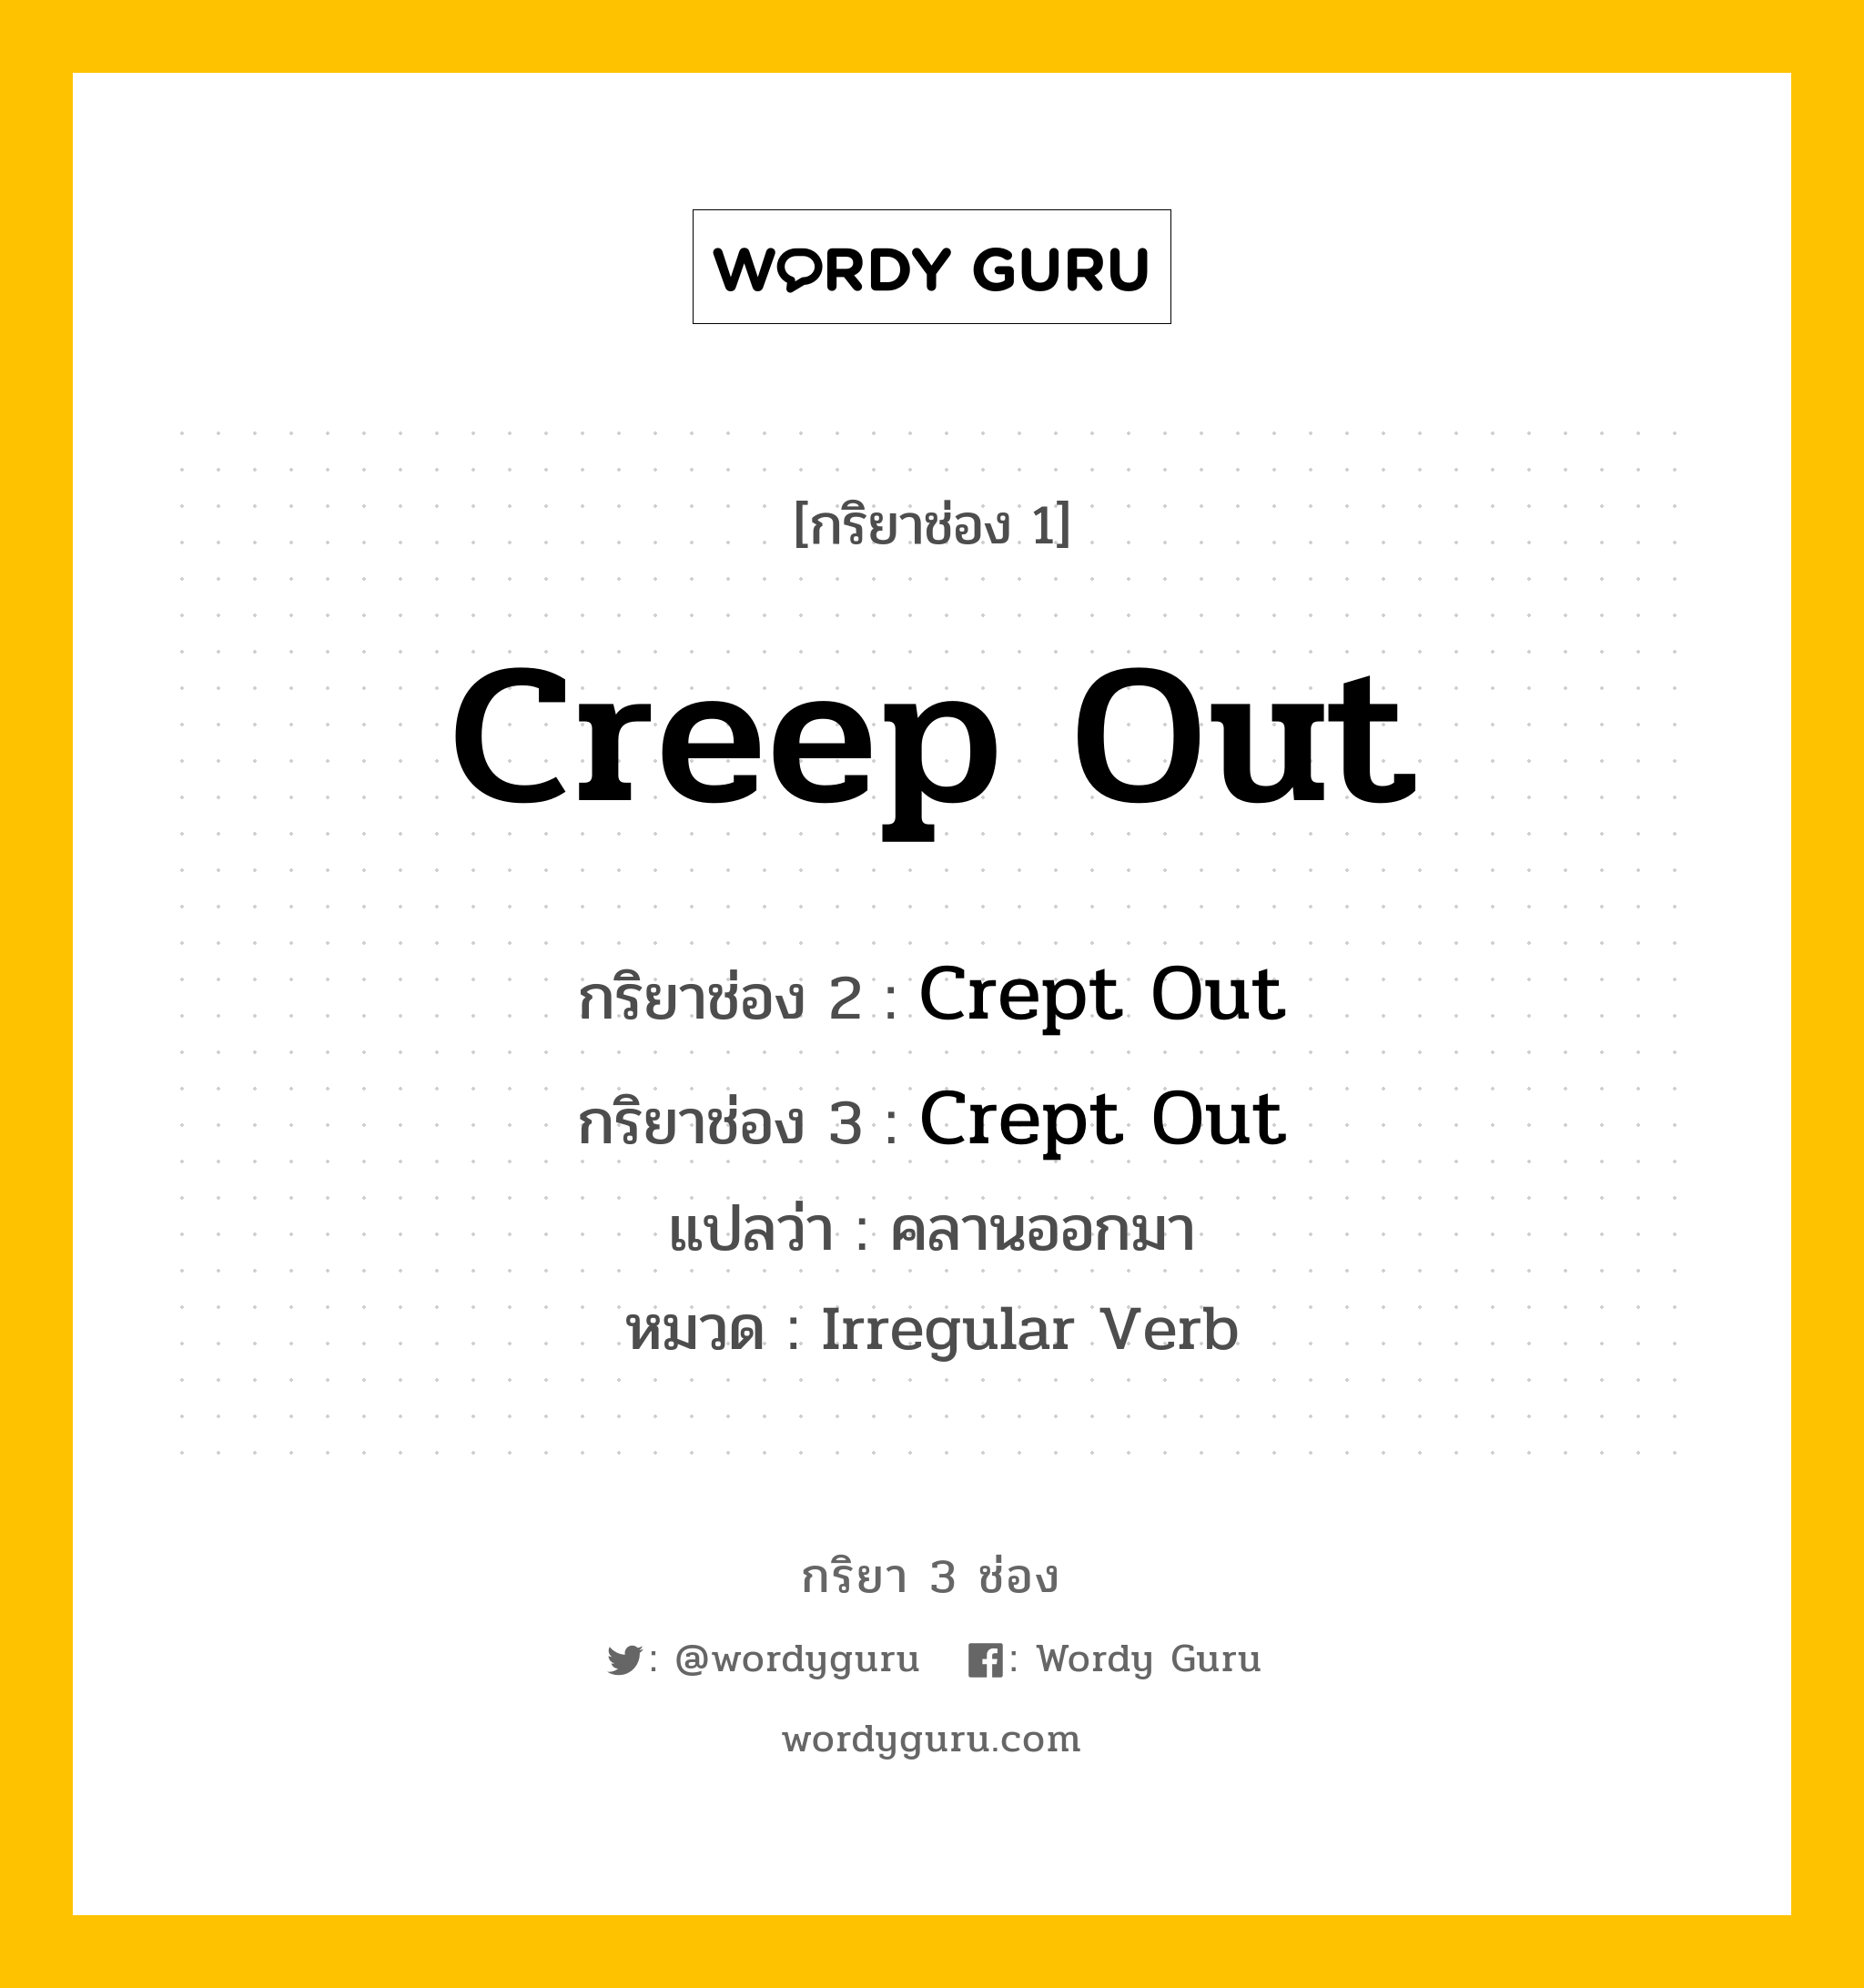 กริยา 3 ช่อง: Creep Out ช่อง 2 Creep Out ช่อง 3 คืออะไร, กริยาช่อง 1 Creep Out กริยาช่อง 2 Crept Out กริยาช่อง 3 Crept Out แปลว่า คลานออกมา หมวด Irregular Verb หมวด Irregular Verb